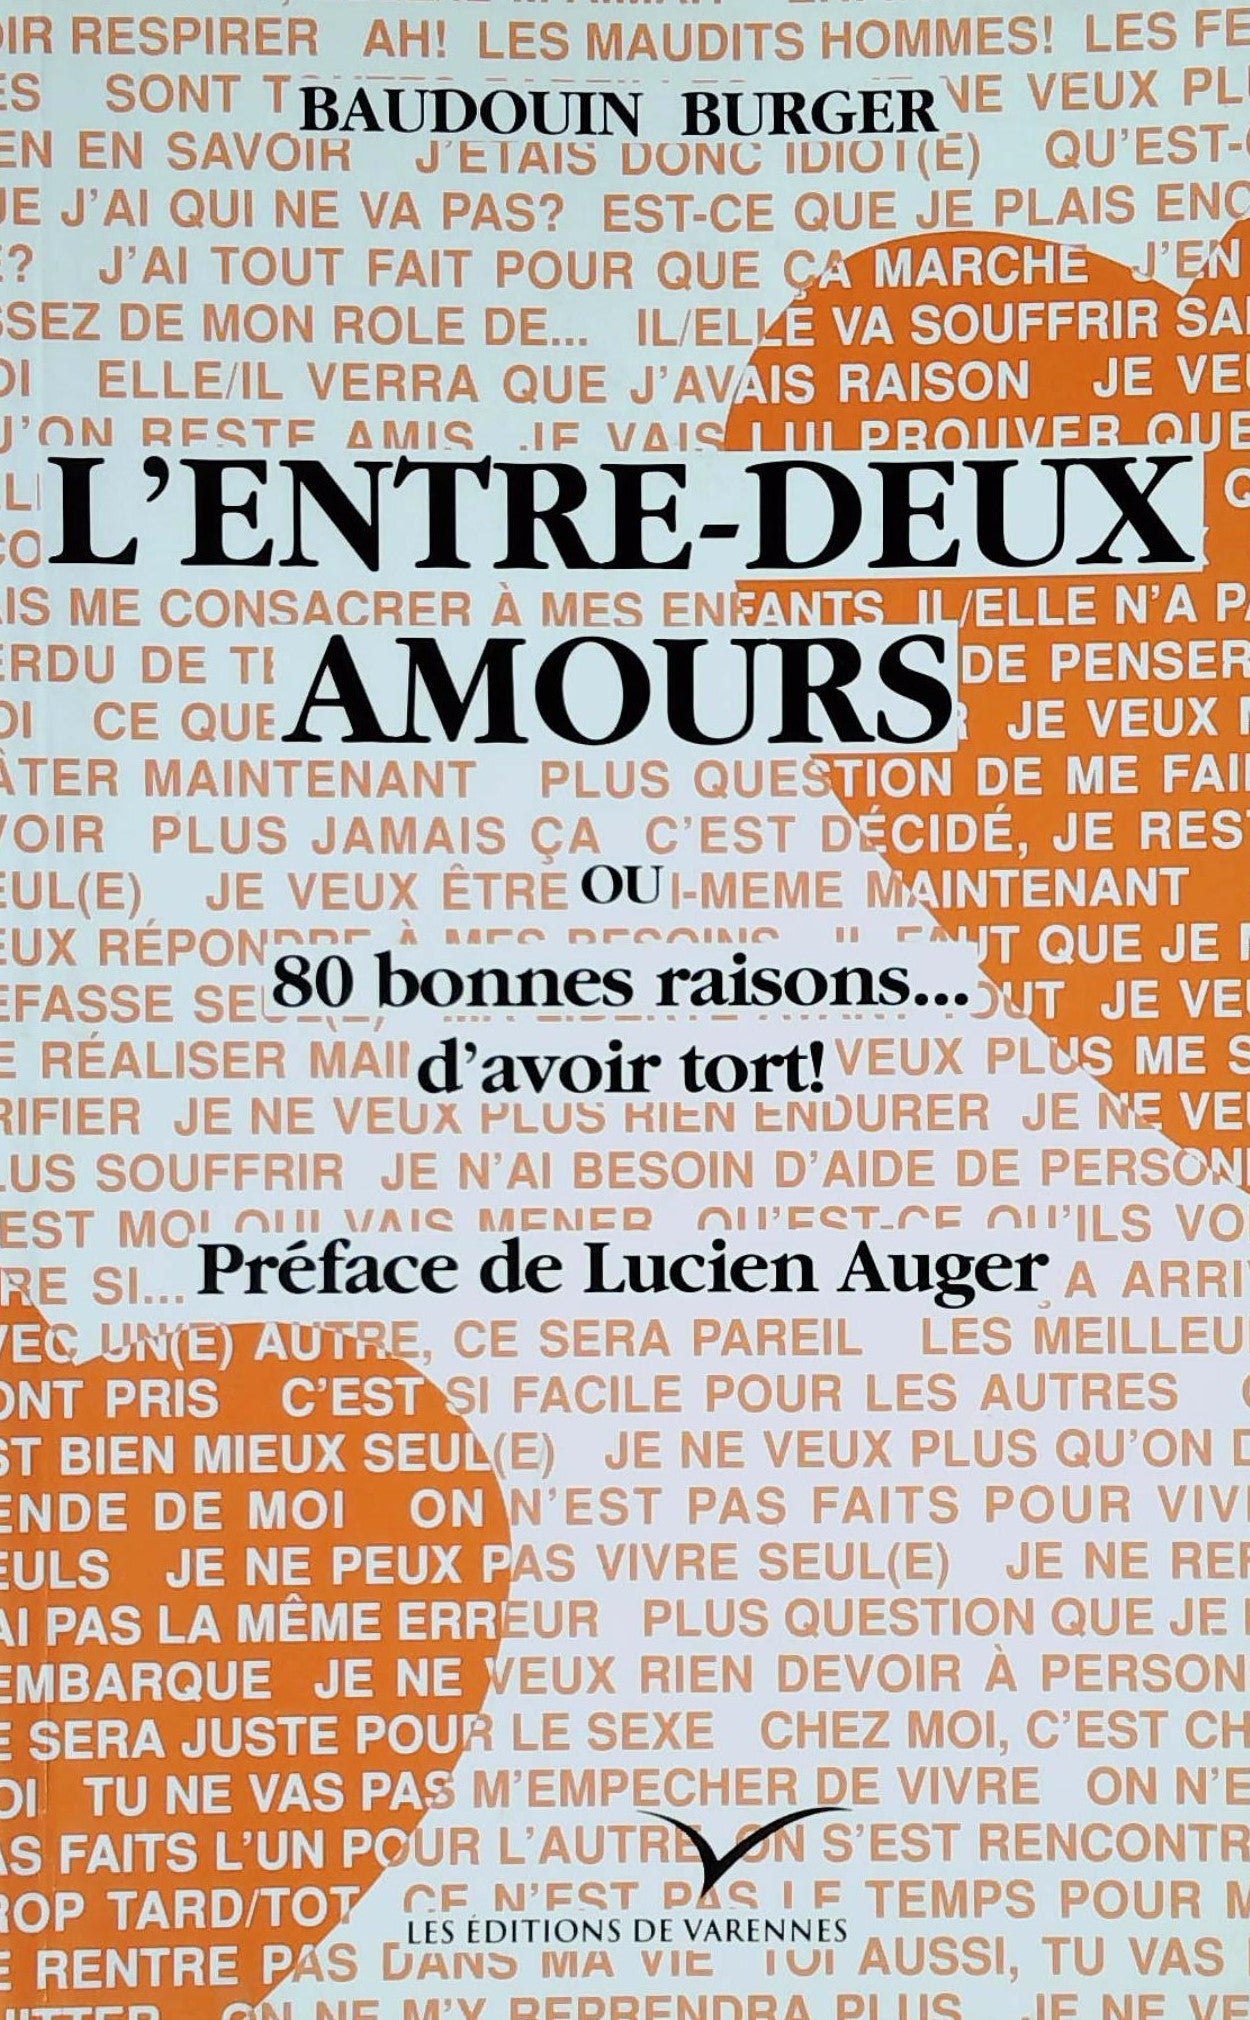 Livre ISBN 2980242527 L'entre-deux amours ou 80 bonnes raisons d'avoir tort! (Baudouin Burger)